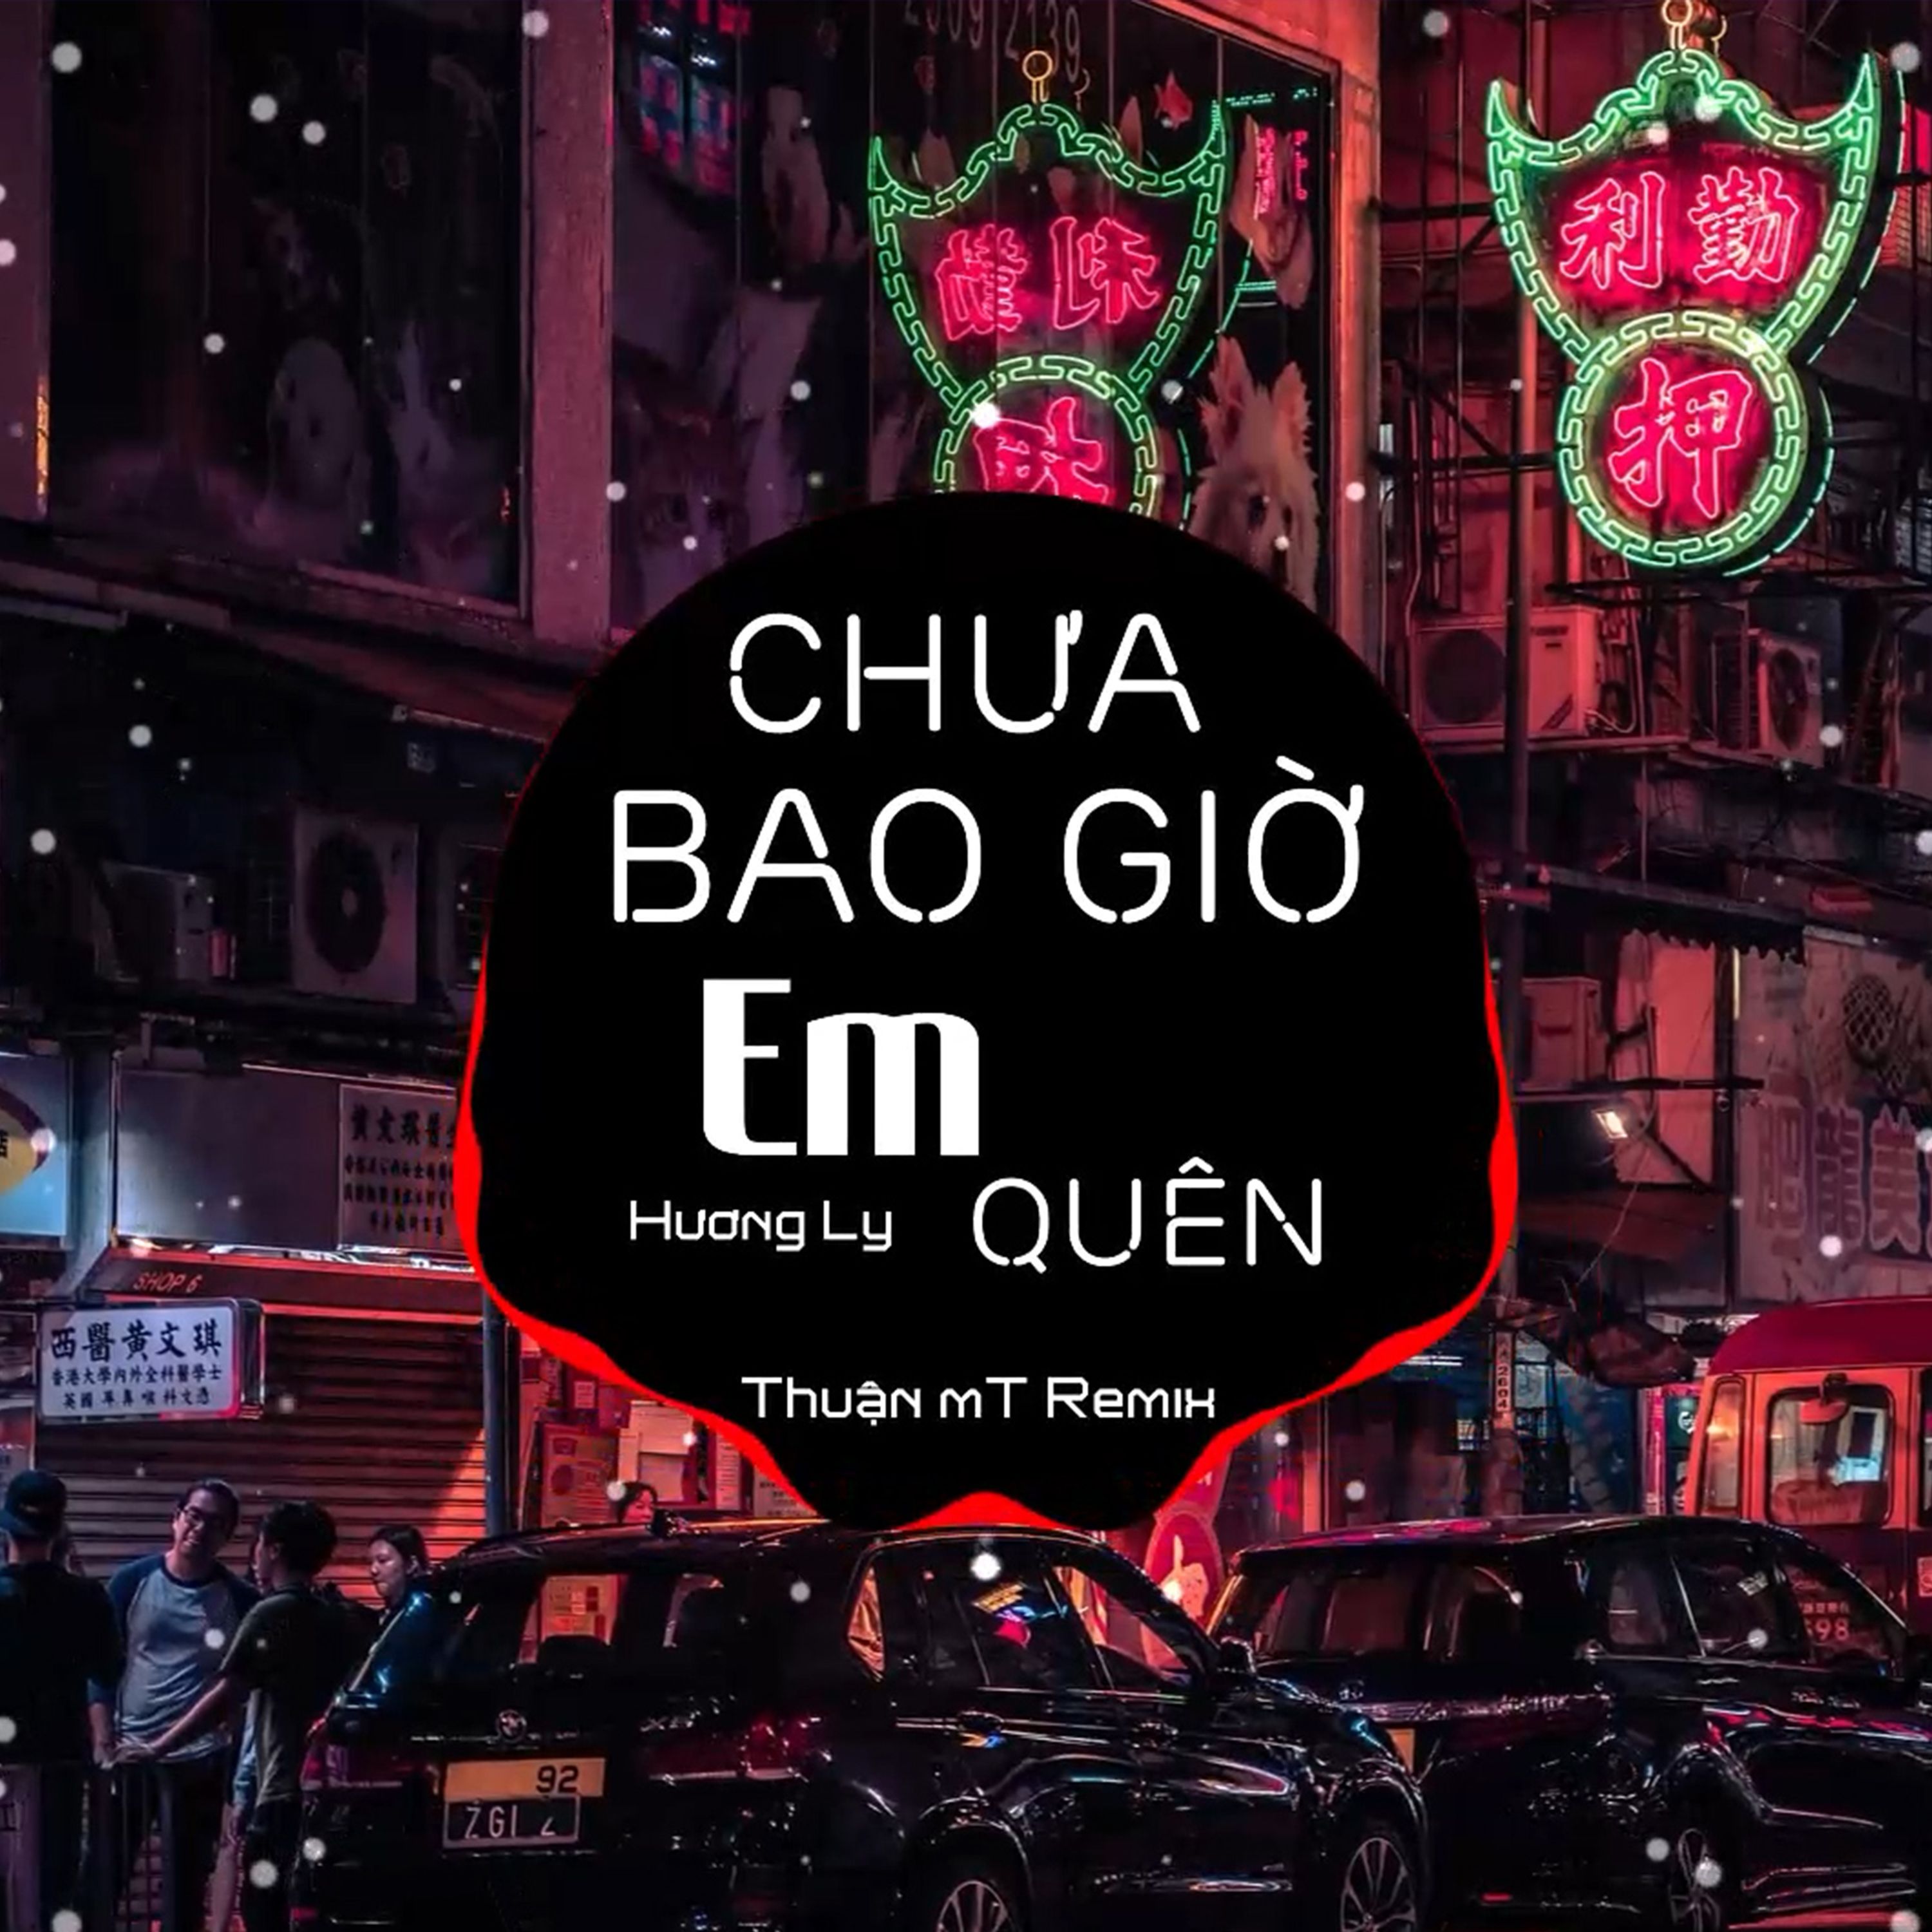 Pobierać Chưa Bao Giờ Em Quên ( Thuận mT Remix ) Ver 2 - Hương Ly | Nhạc Nền Chill Phiêu Nhất TikTok  2021